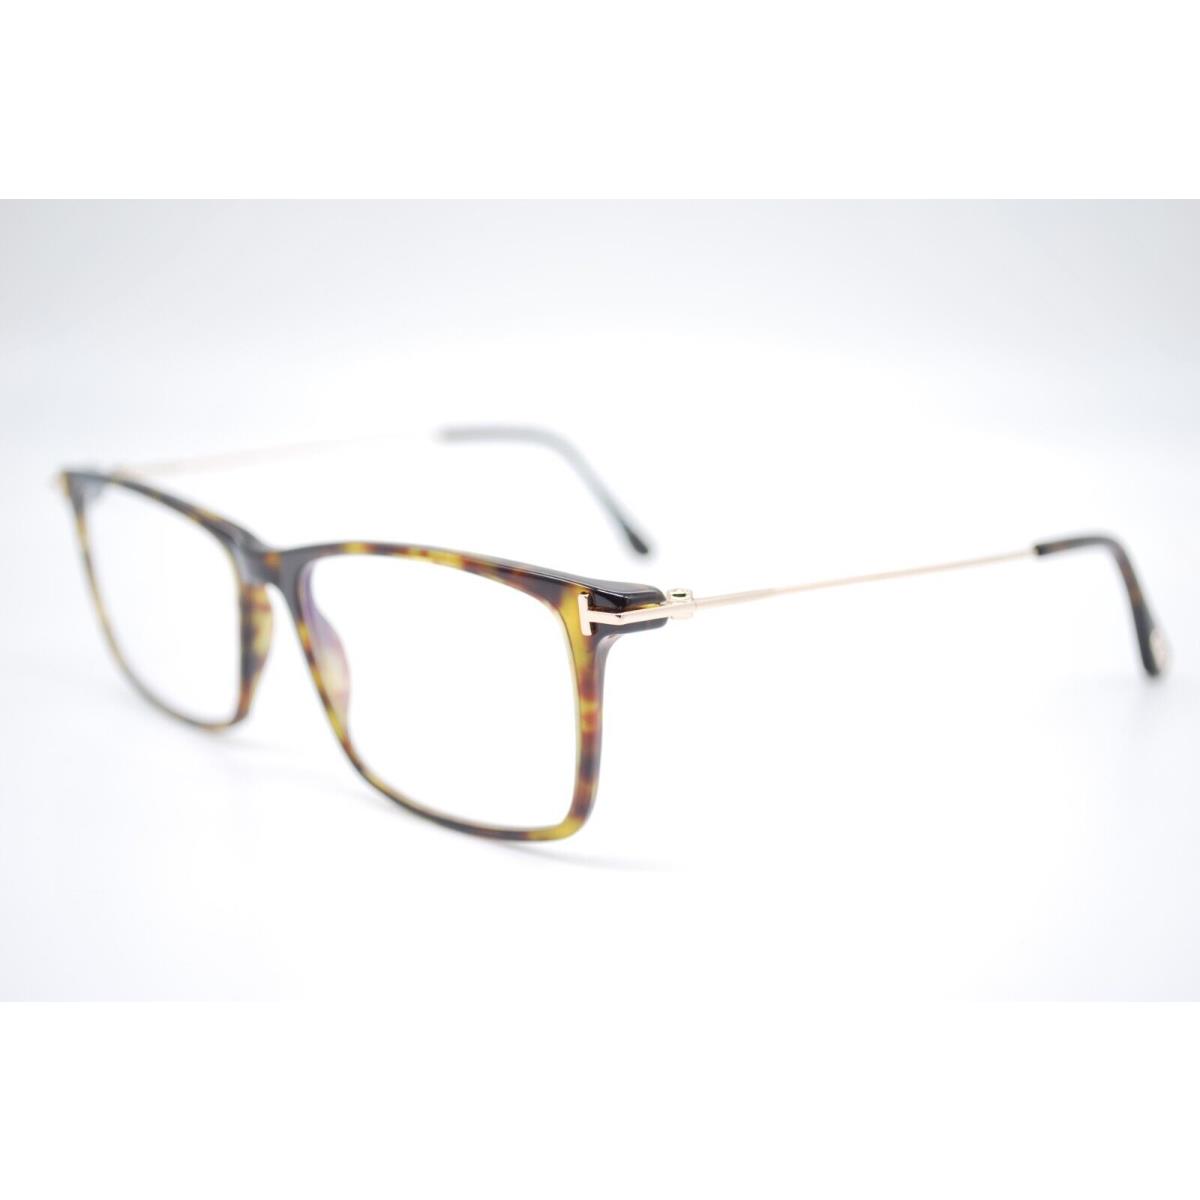 Tom Ford eyeglasses  - HAVANA GOLD Frame 0